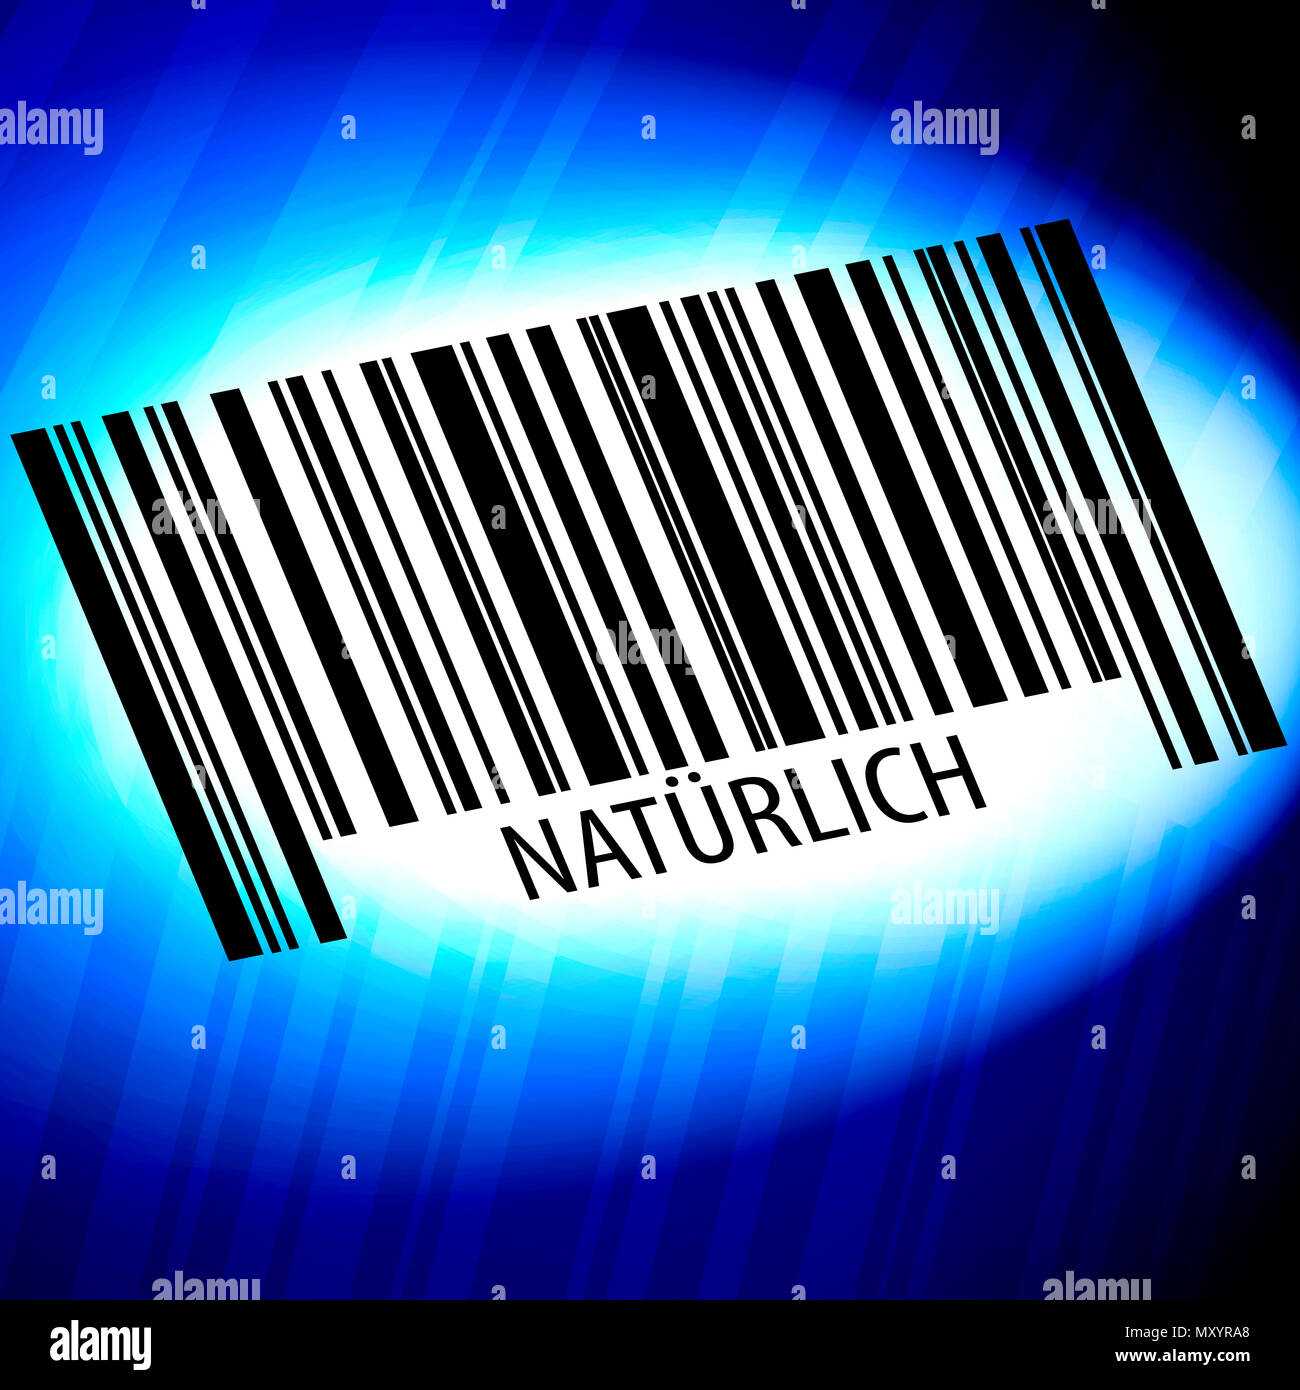 Natürlich - barcode with blue Background Stock Photo